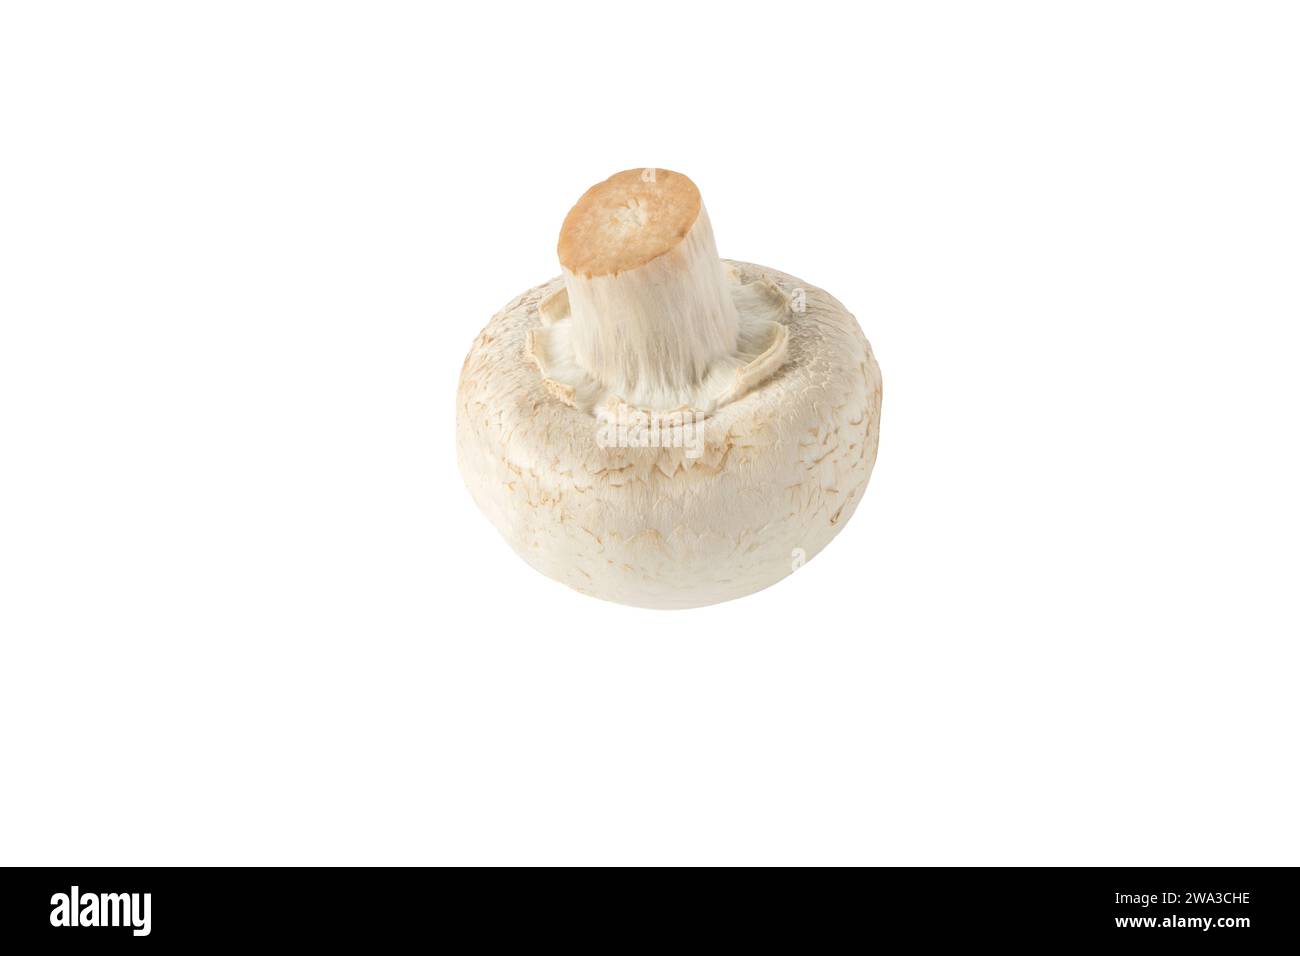 Agaricus bisporus unreifer Fruchtkörper. Weißer Champignon-Pilzknopf isoliert auf weiß. Stockfoto